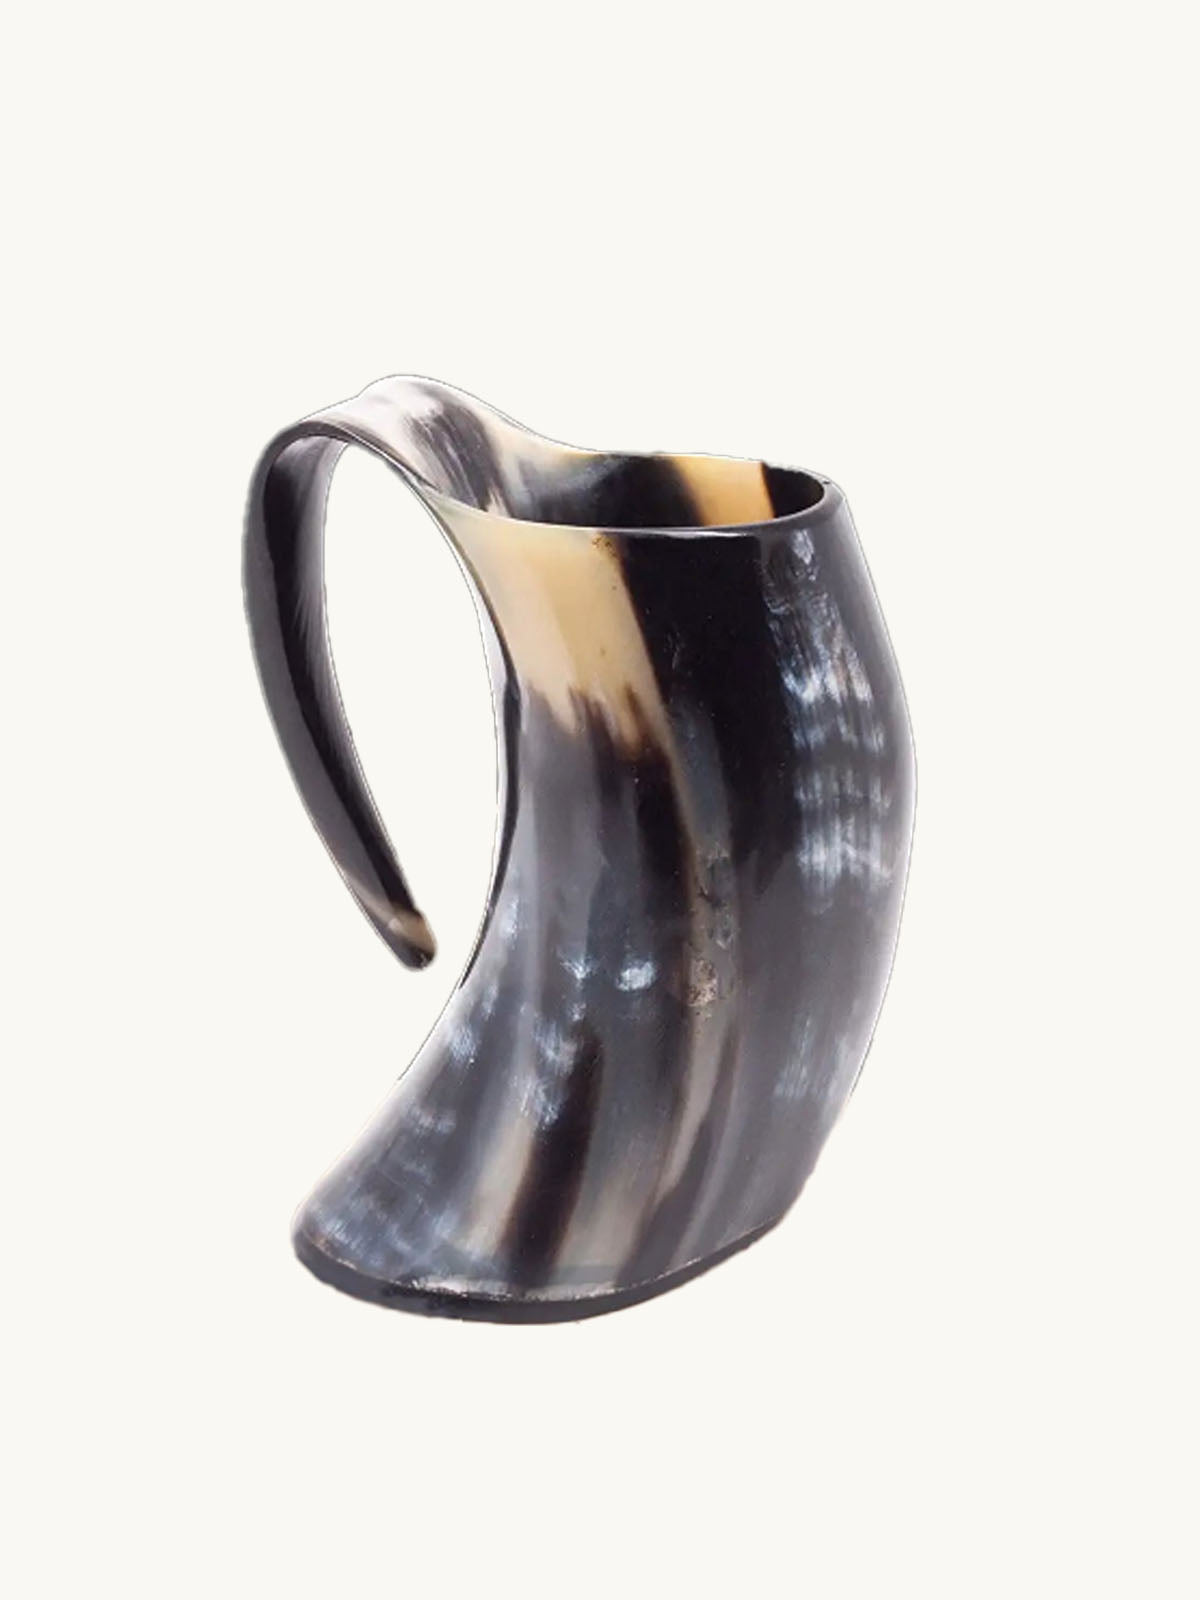 Laniti Viking Drinking Horn Mug Medieval Style Genuine Ox Horn Mug Artisans Craftsmanship